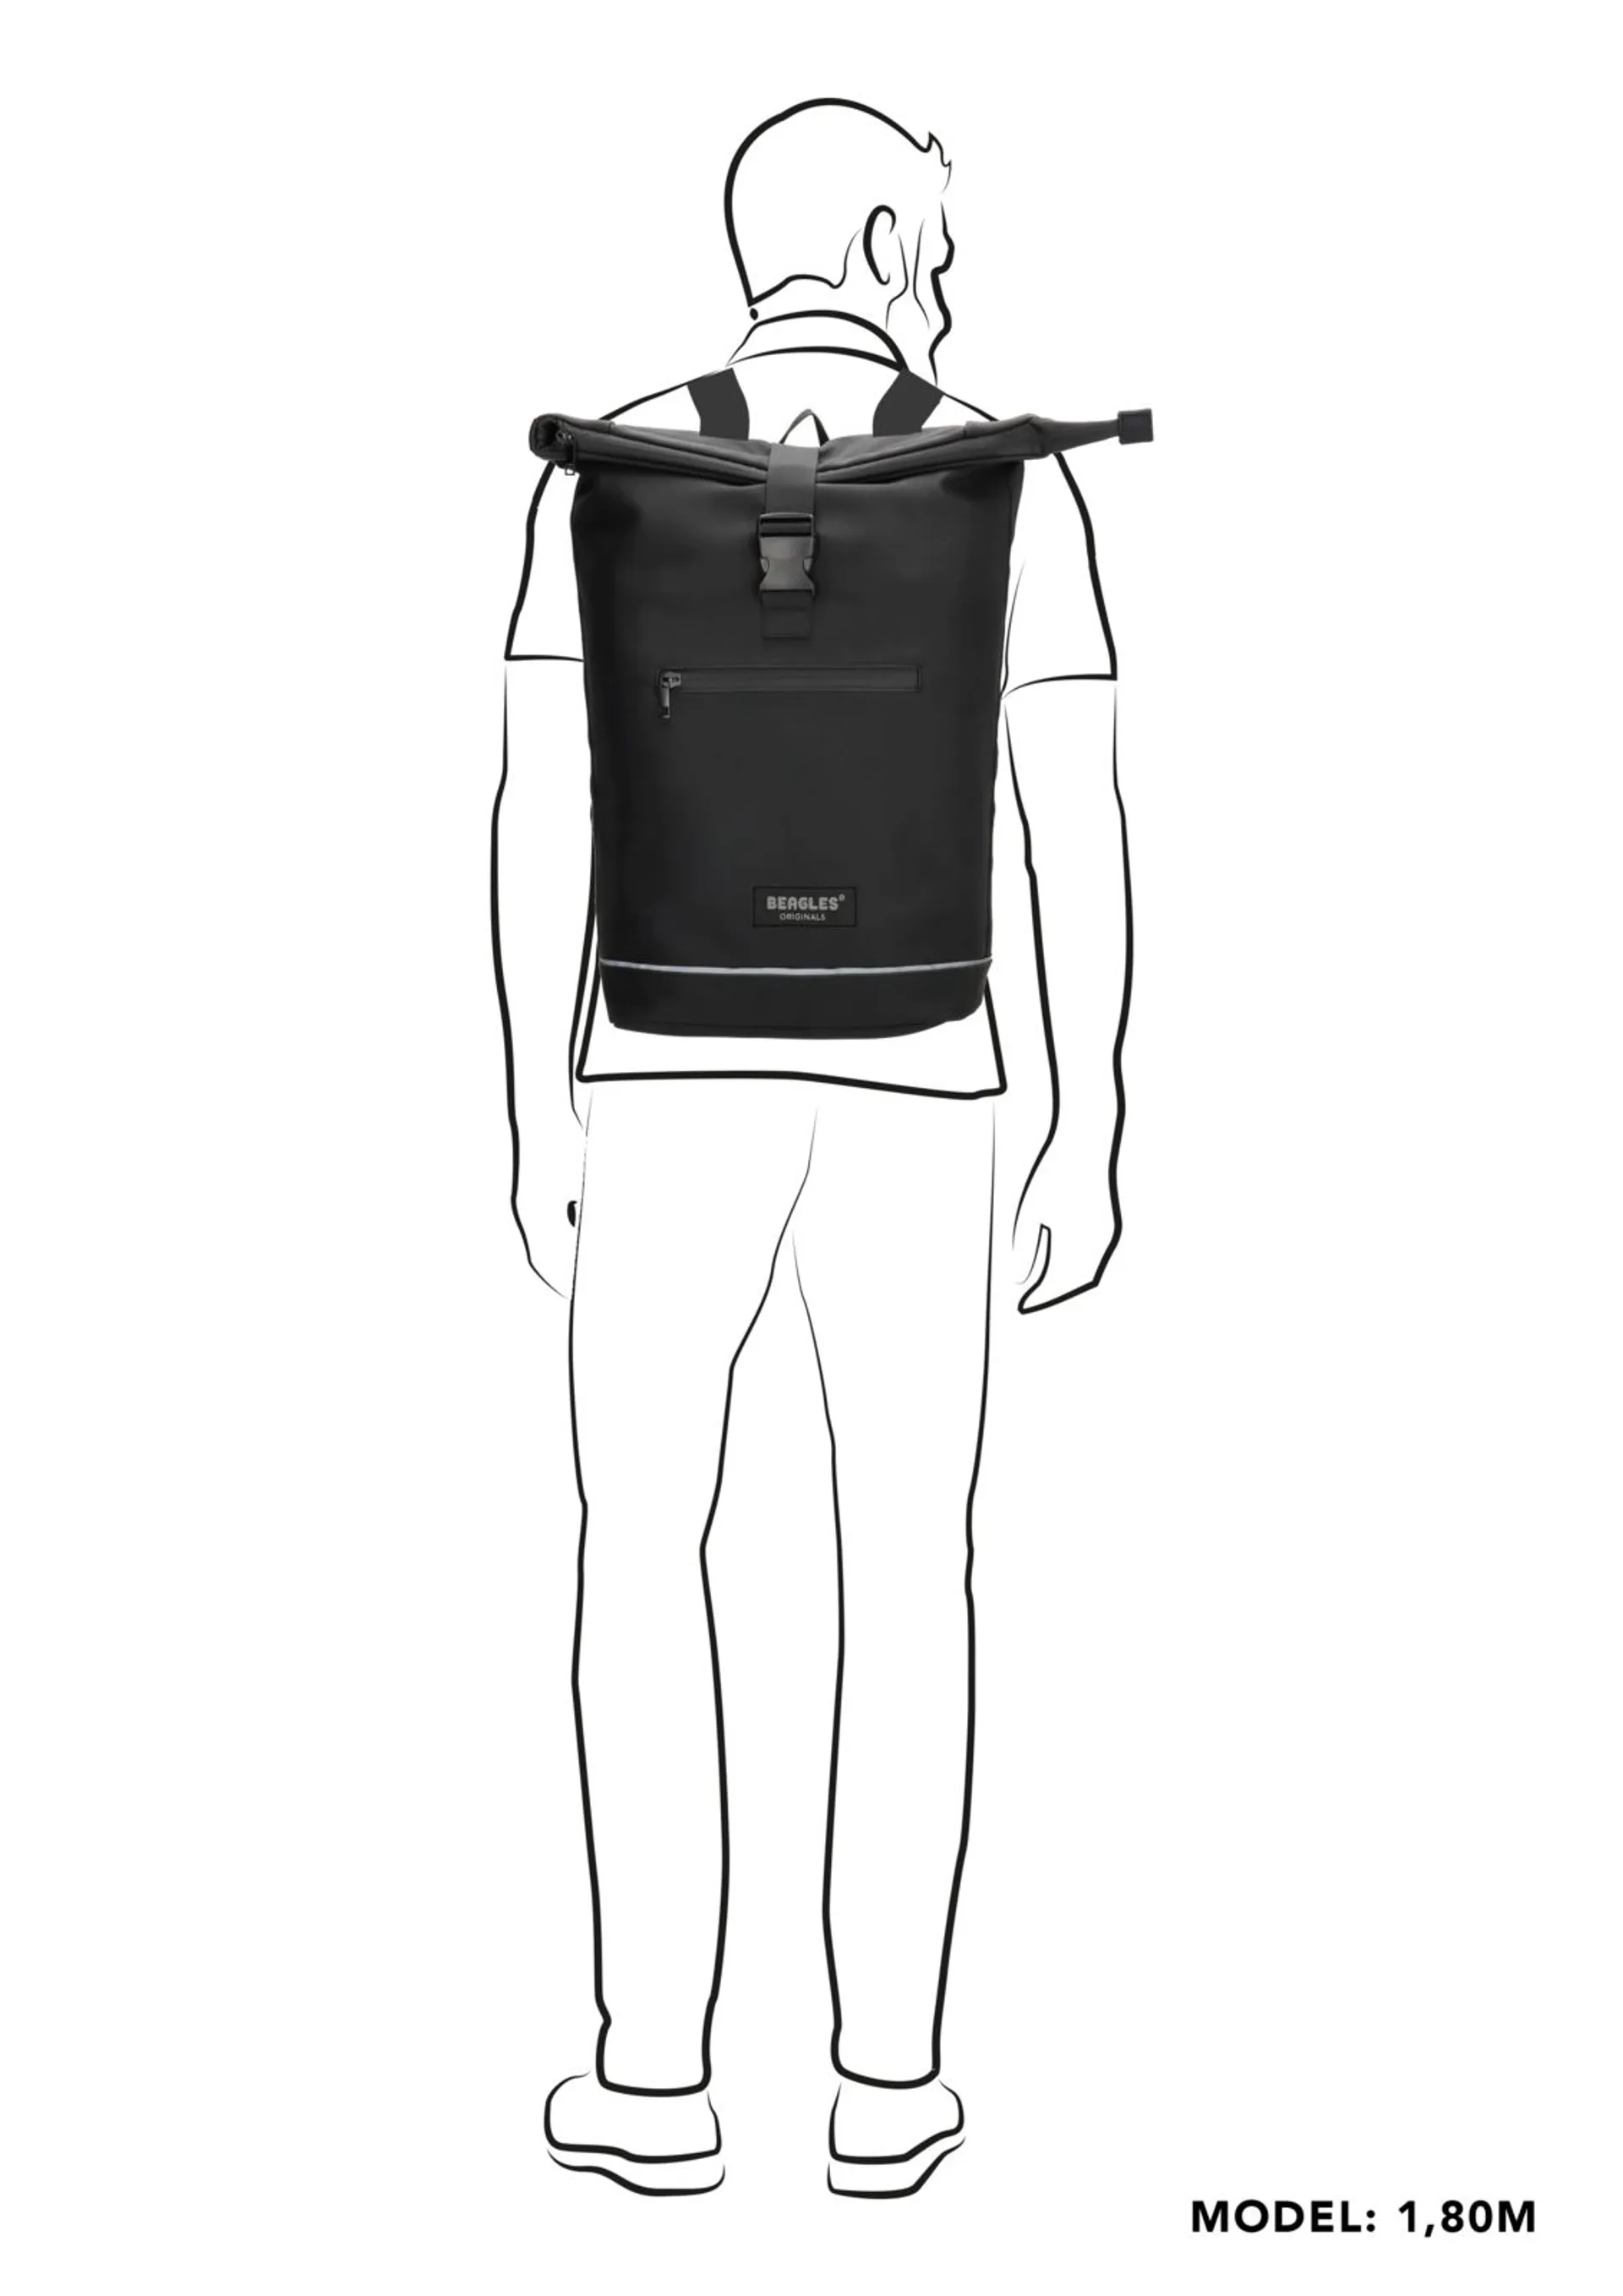 waterproof backpack - 5